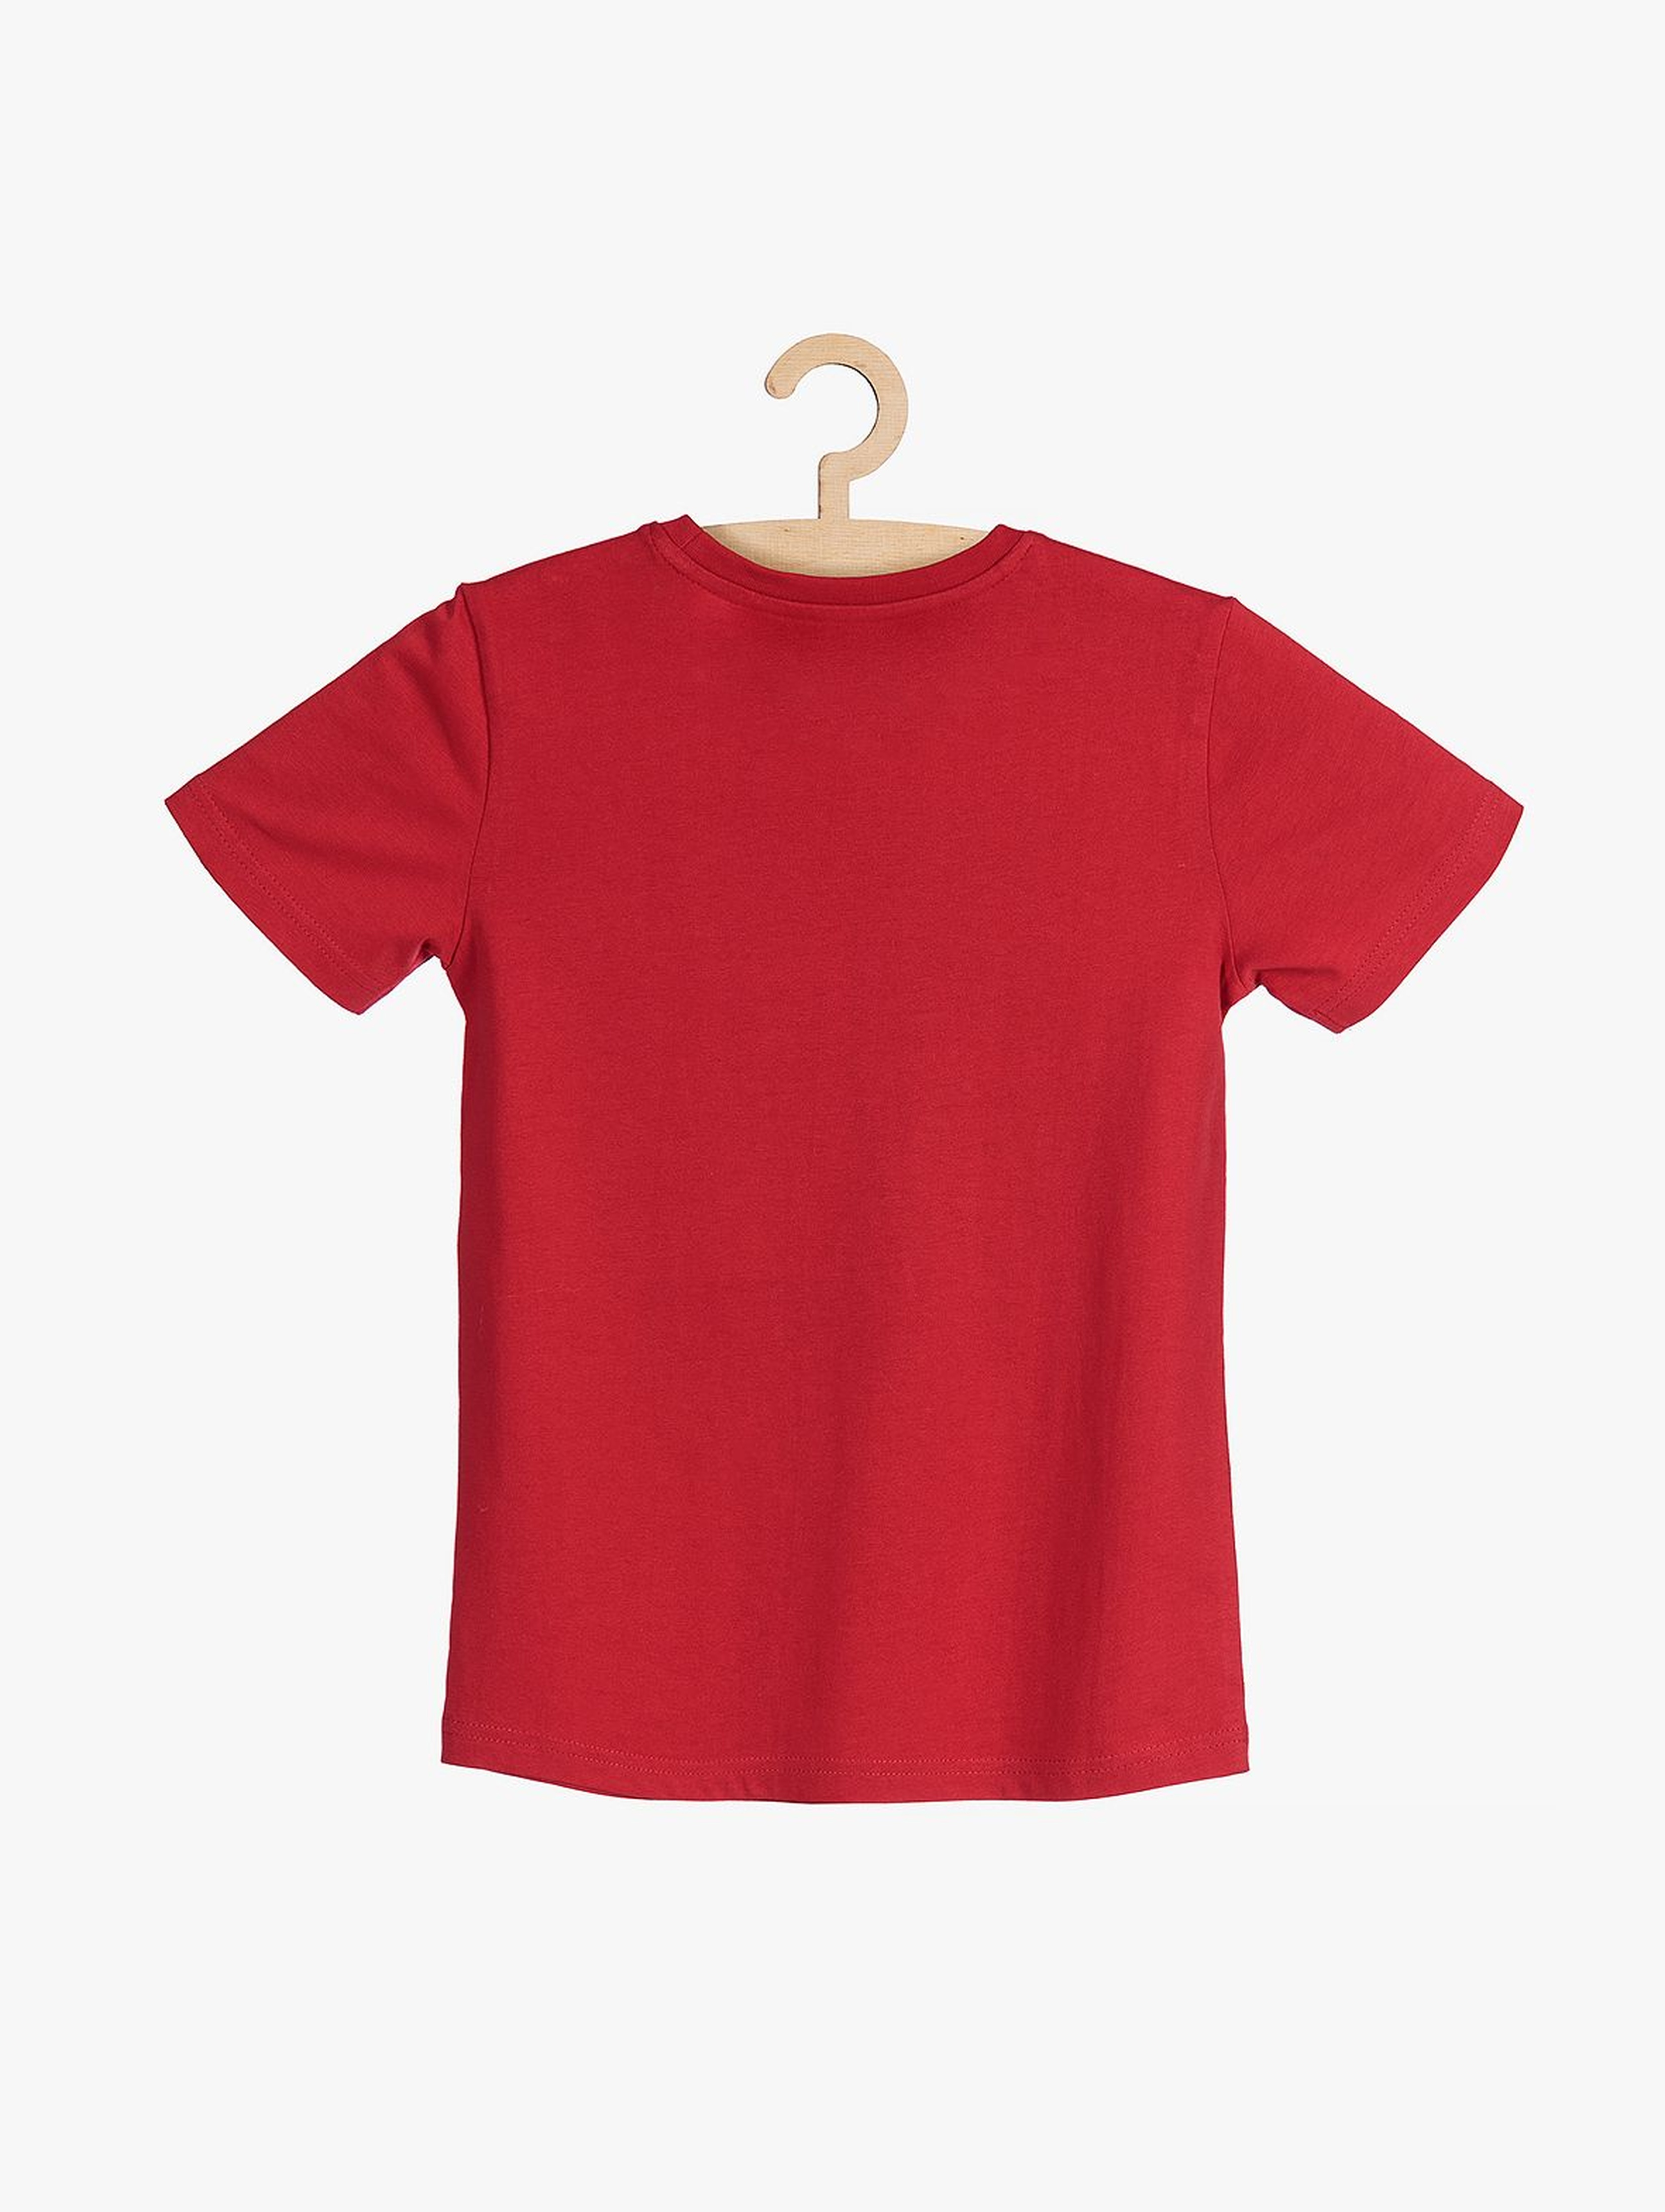 T-shirt czerwony ze świątecznym nadrukiem